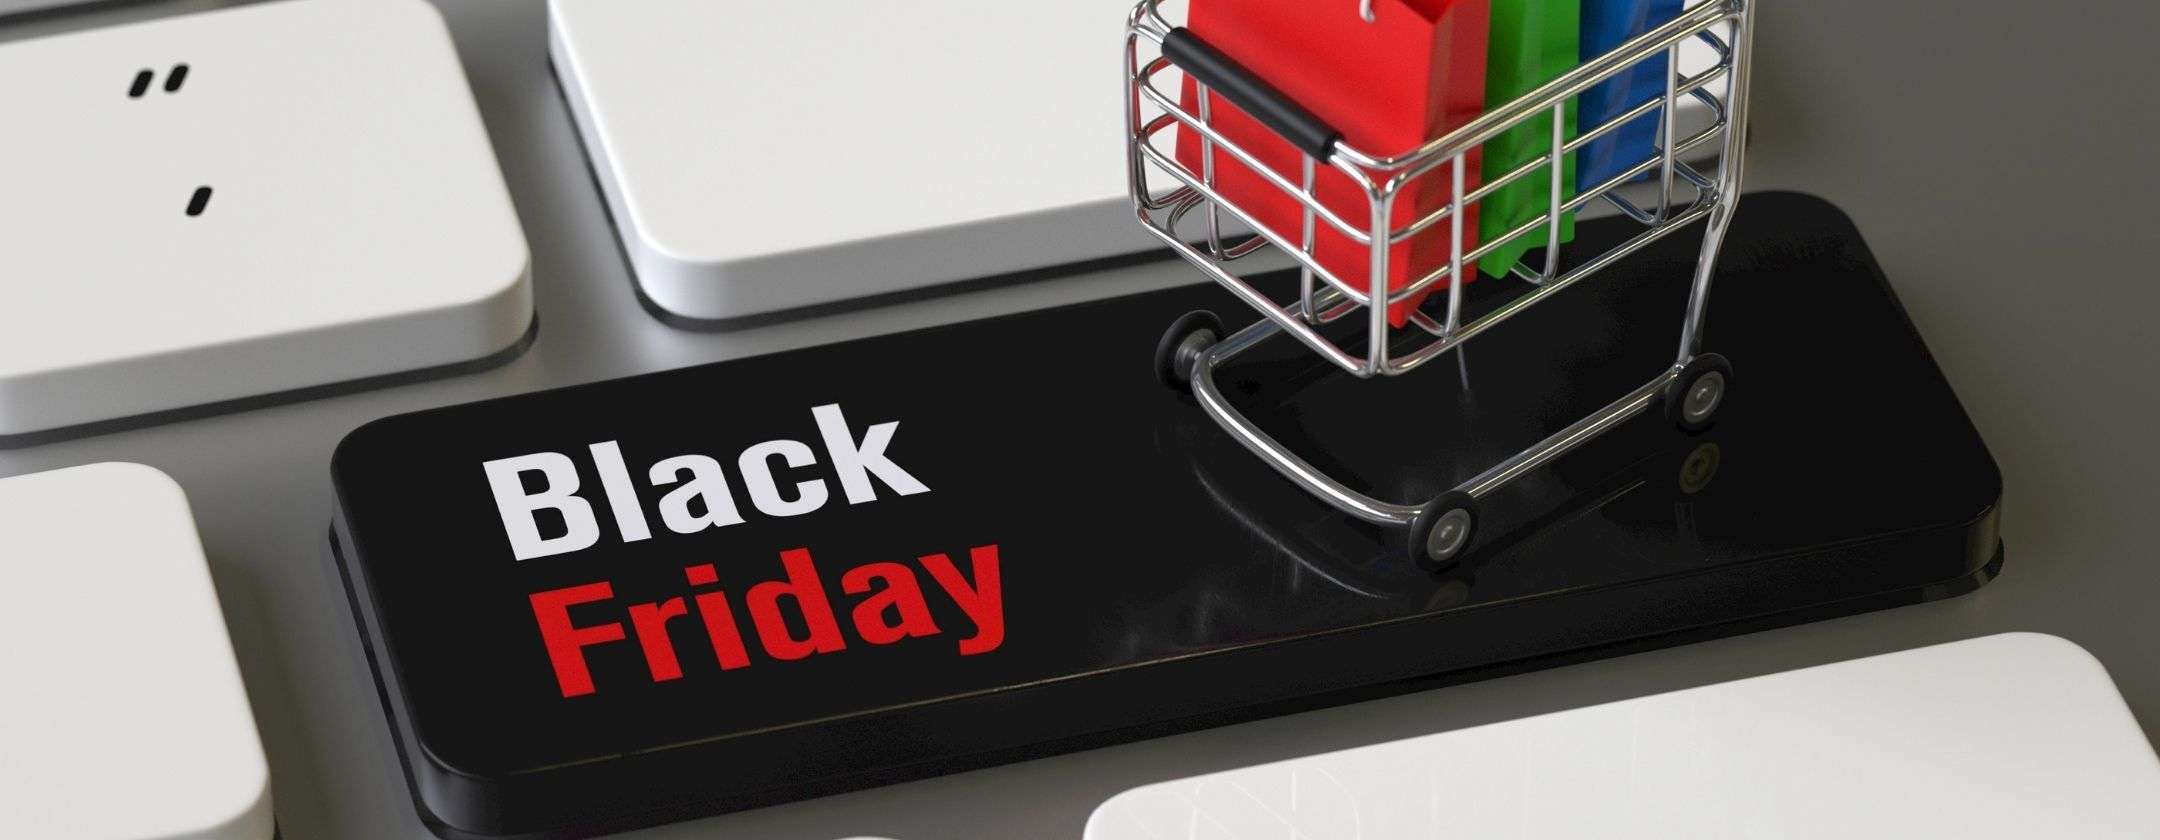 Black Friday: quest'anno le frodi nei pagamenti online sono aumentate